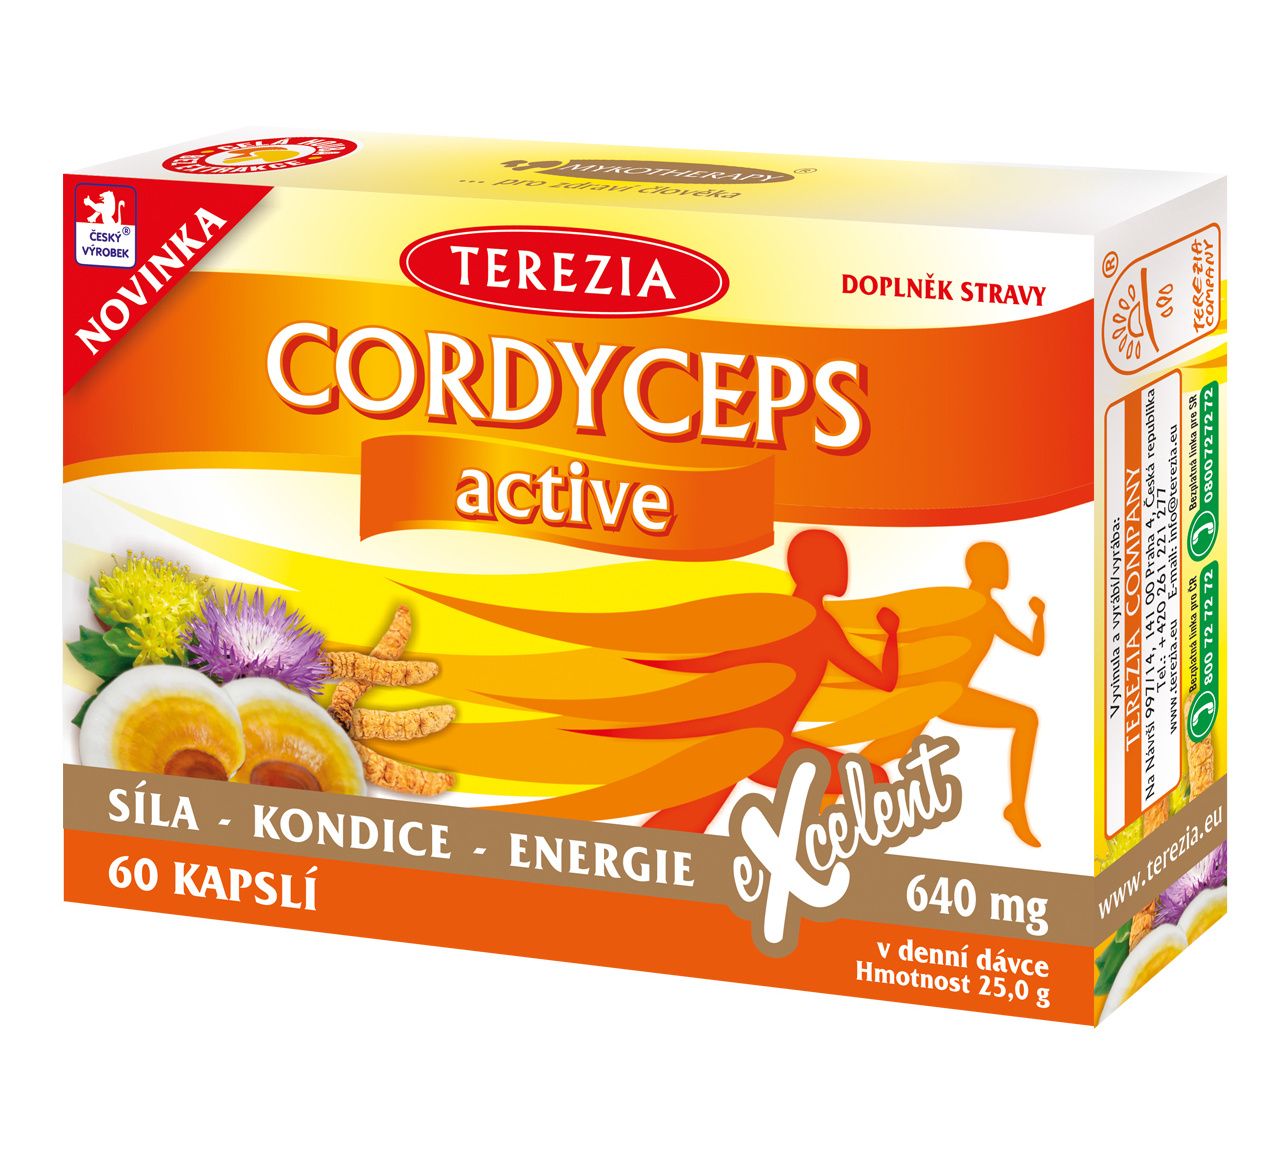 Terezia CORDYCEPS active 60 kapslí Terezia